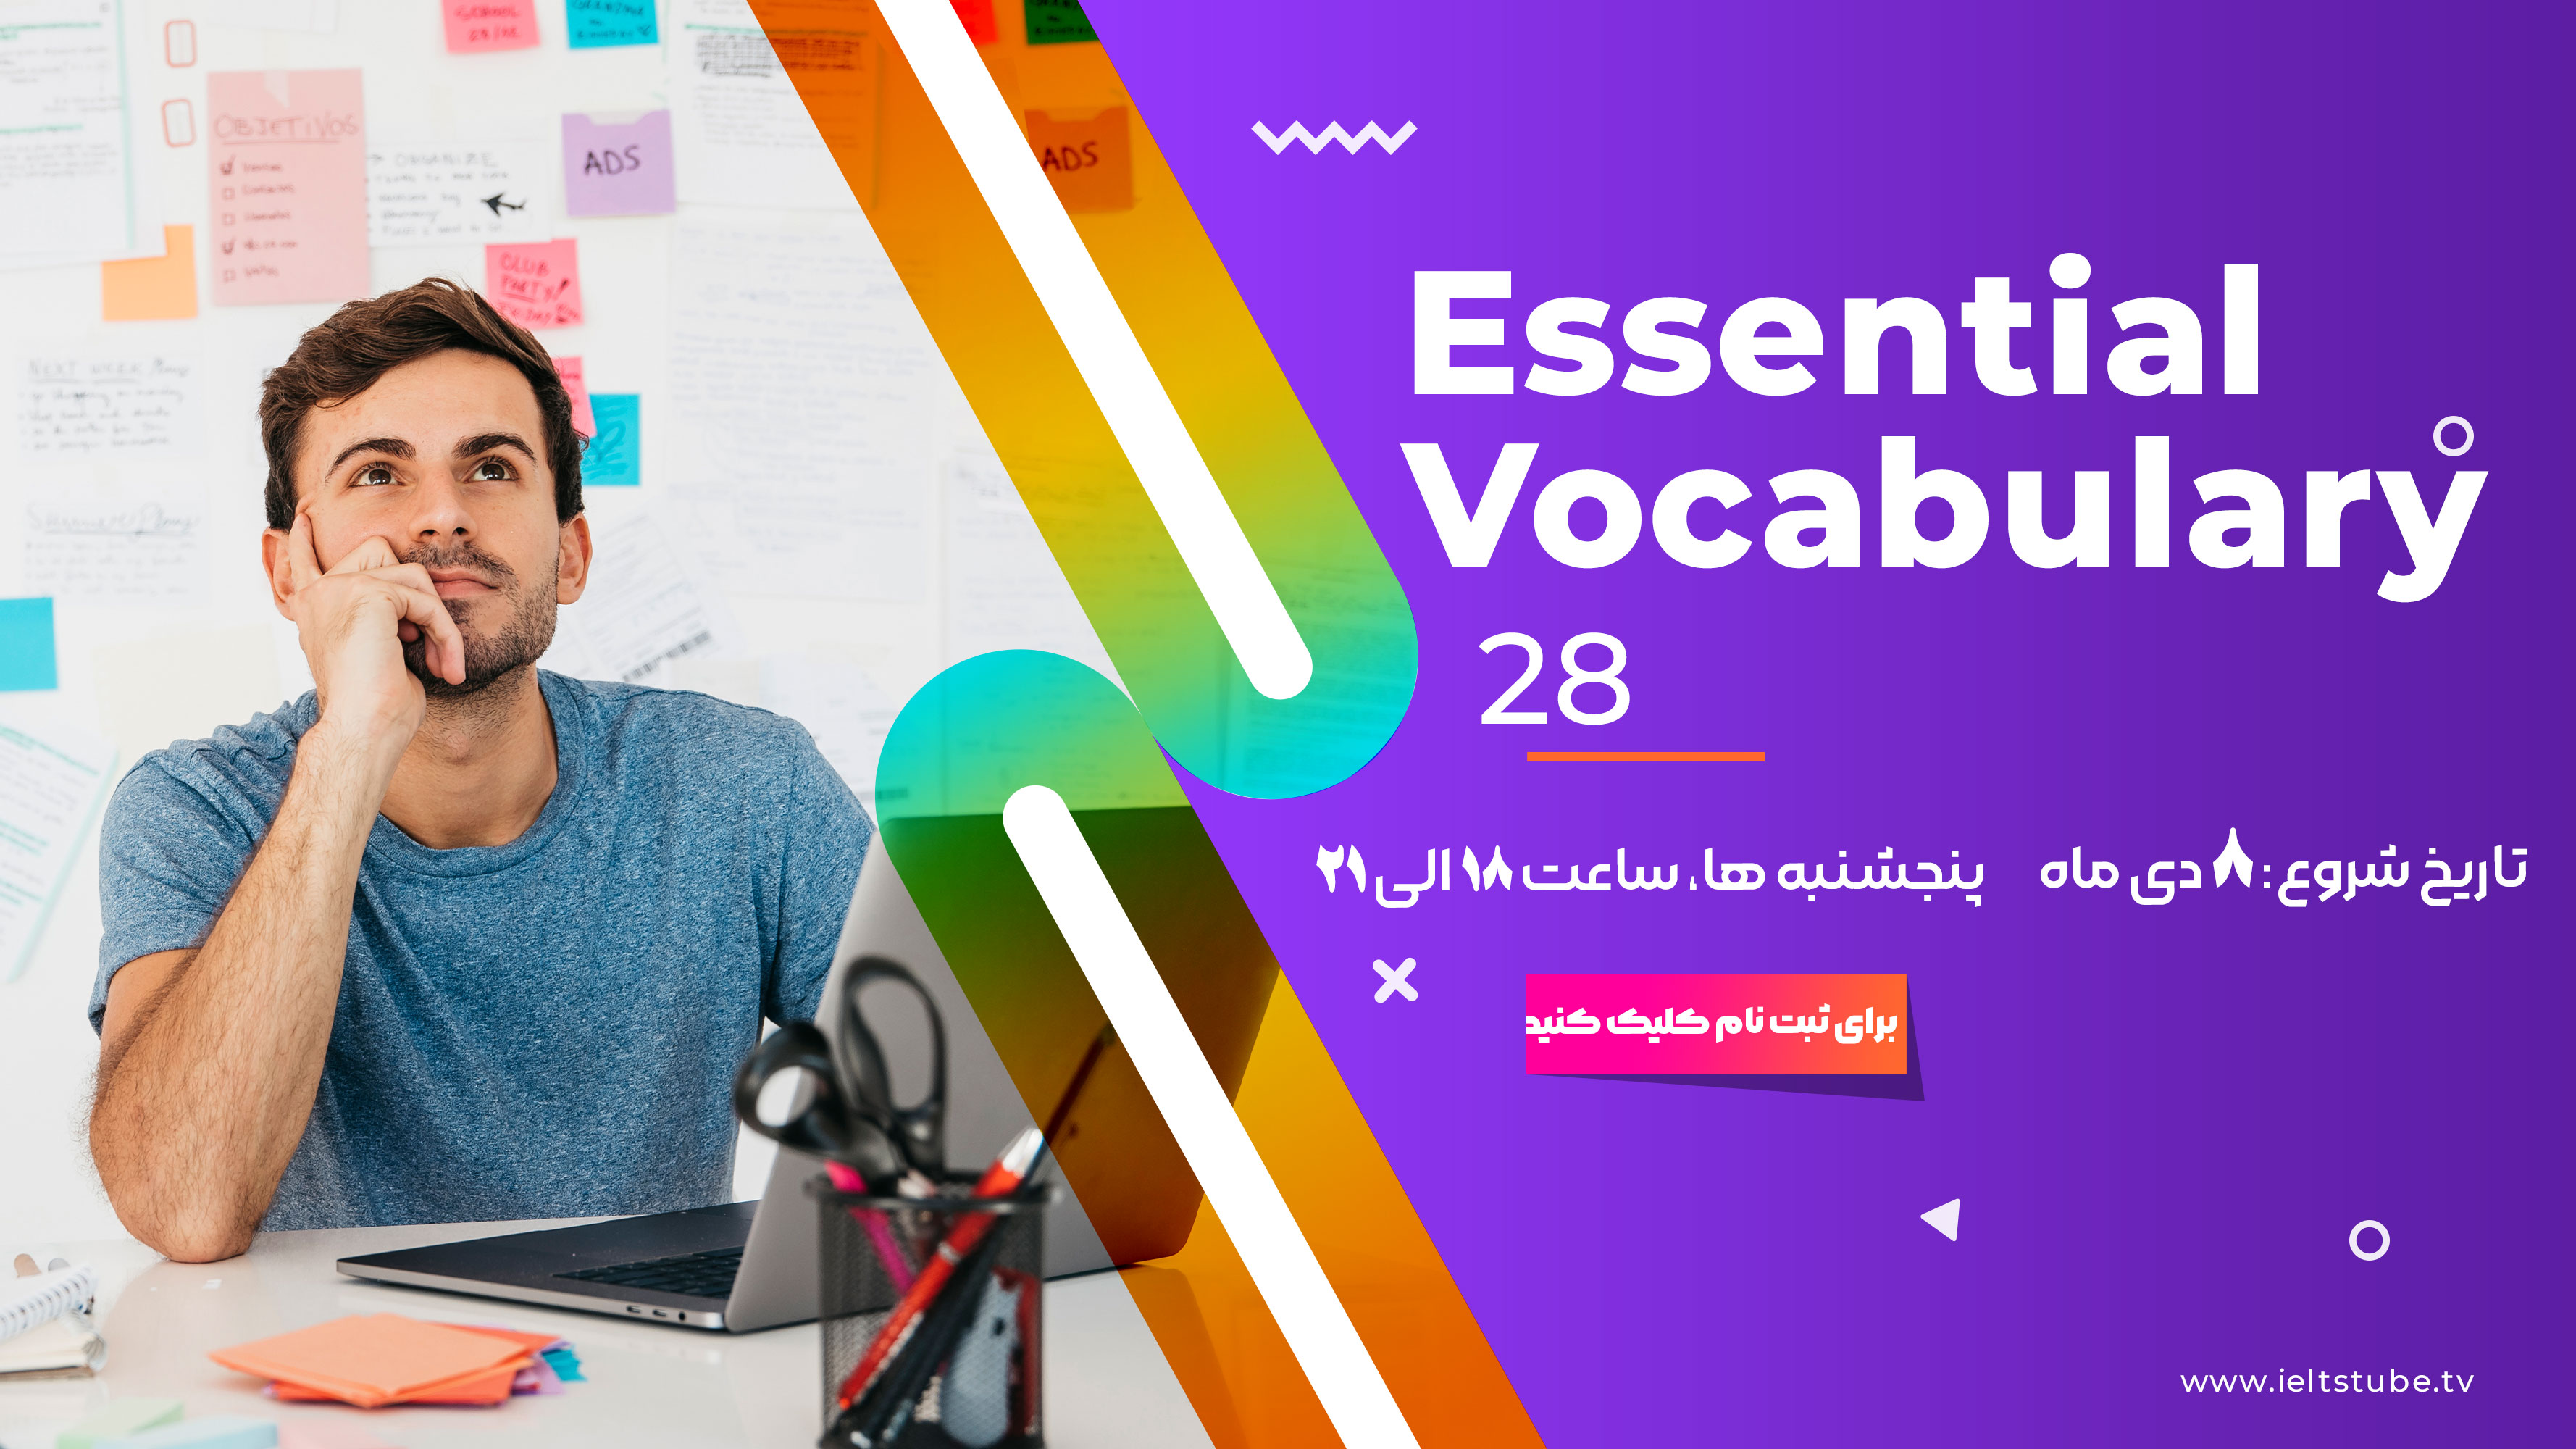 Essential Vocabulary 28 (Poster)